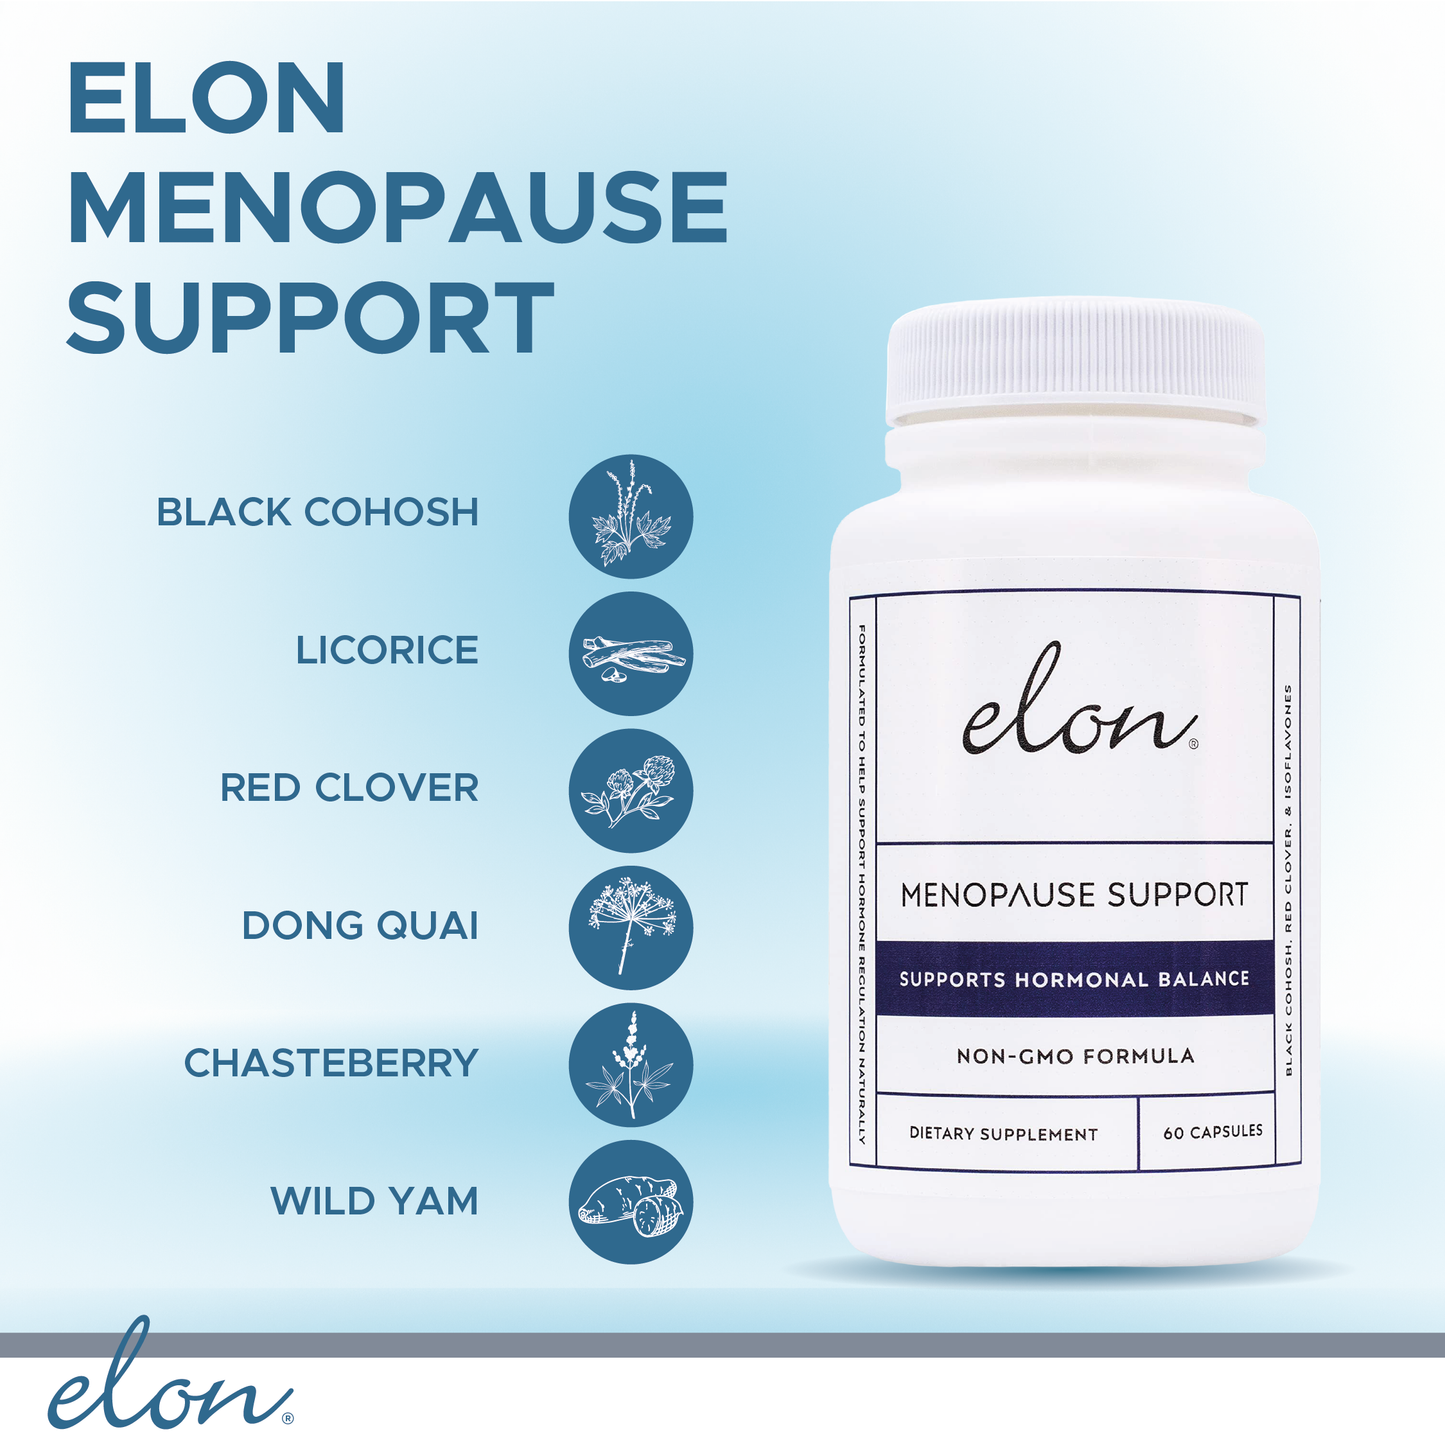 Elon Menopause Support